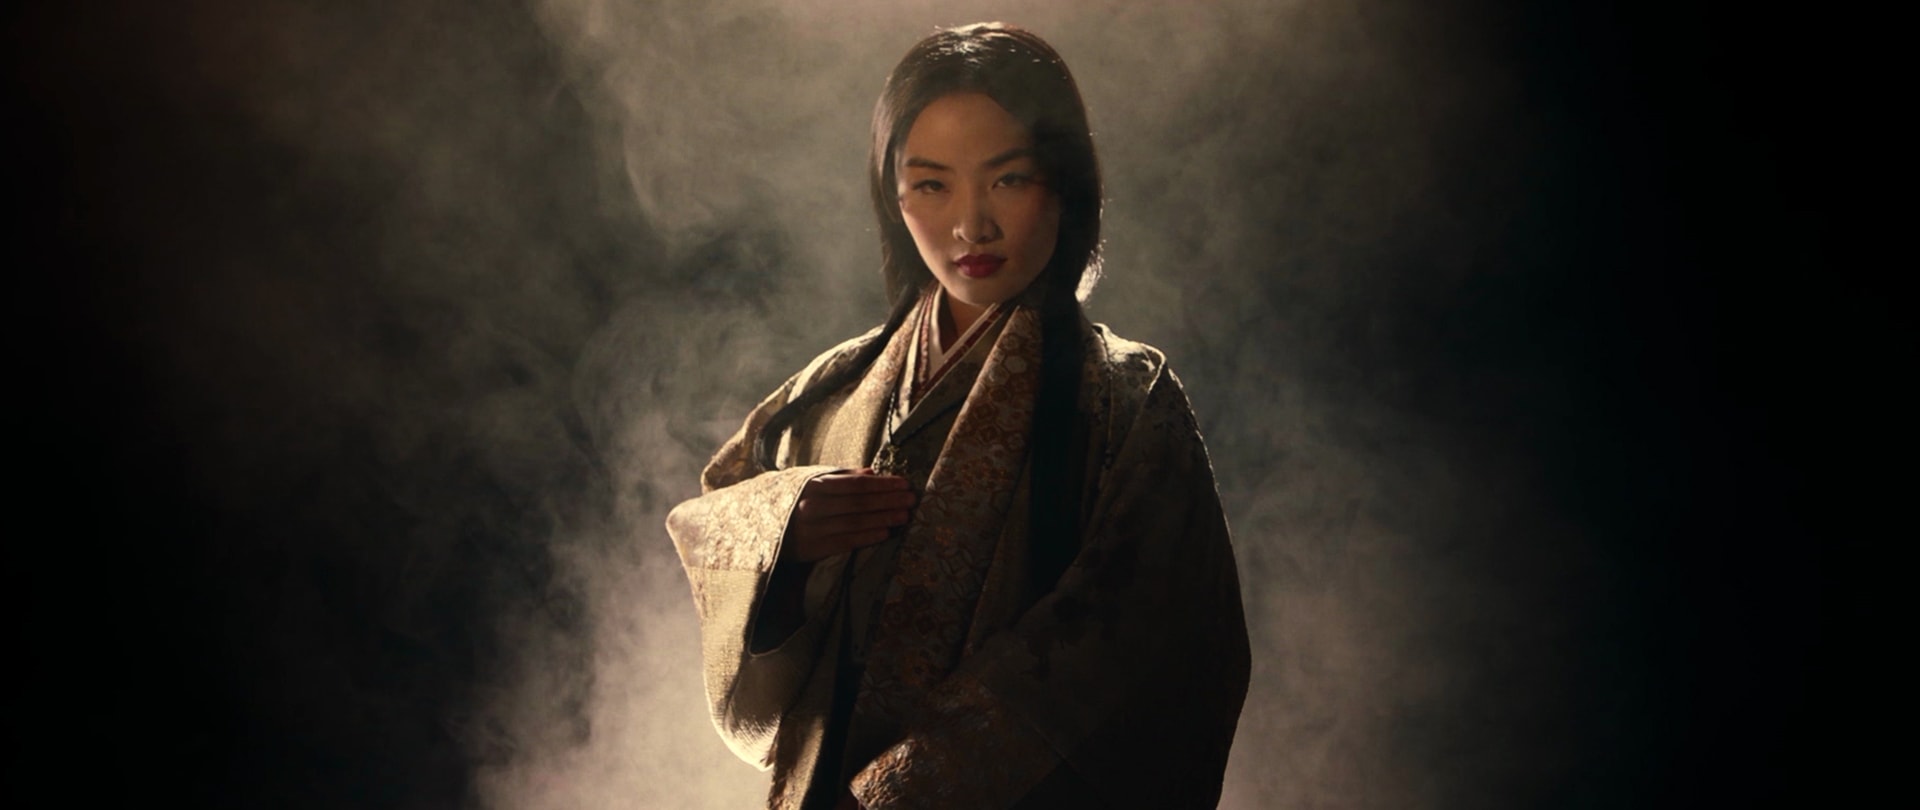 Anna Sawai as Toda Mariko in FX's Shōgun